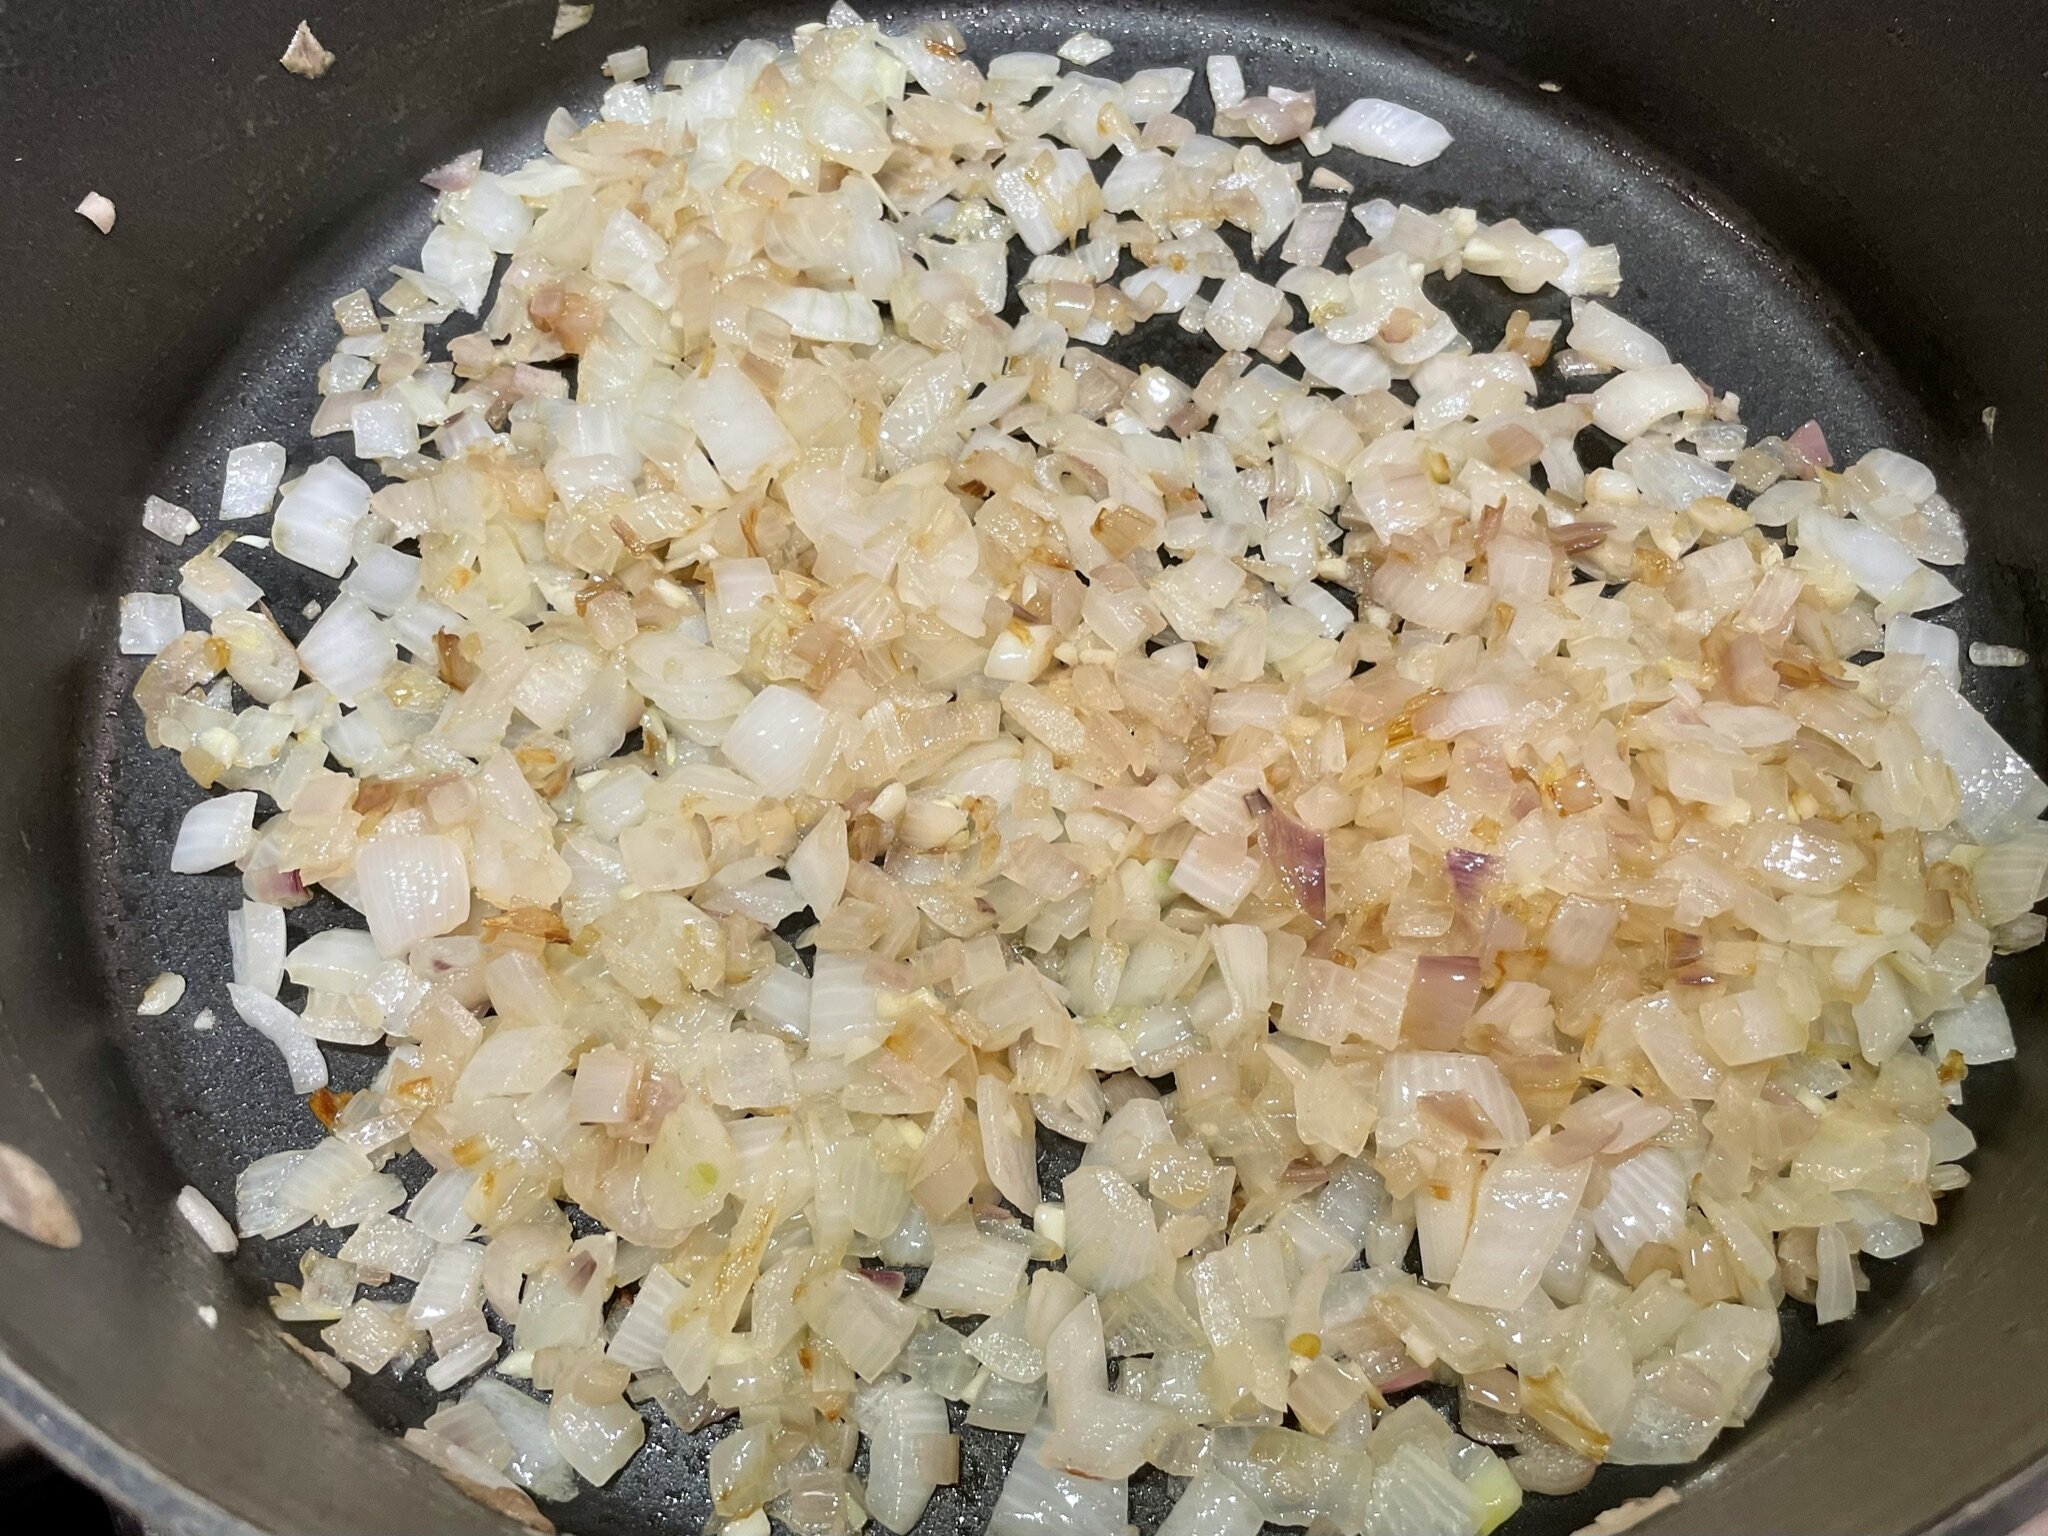 d) Add garlic.